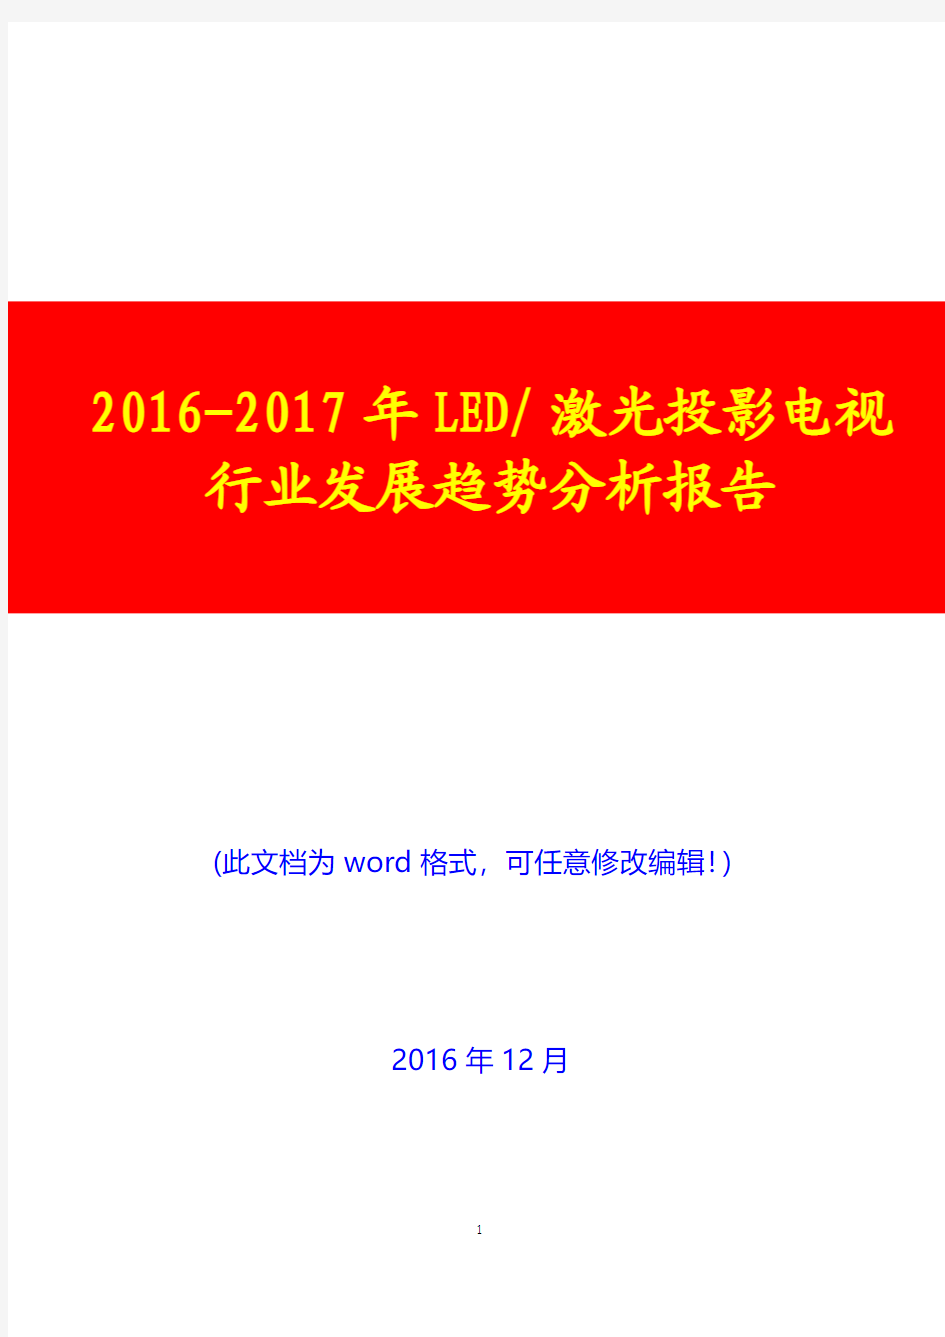 2016-2017年LED 激光投影电视行业发展趋势投资展望分析报告